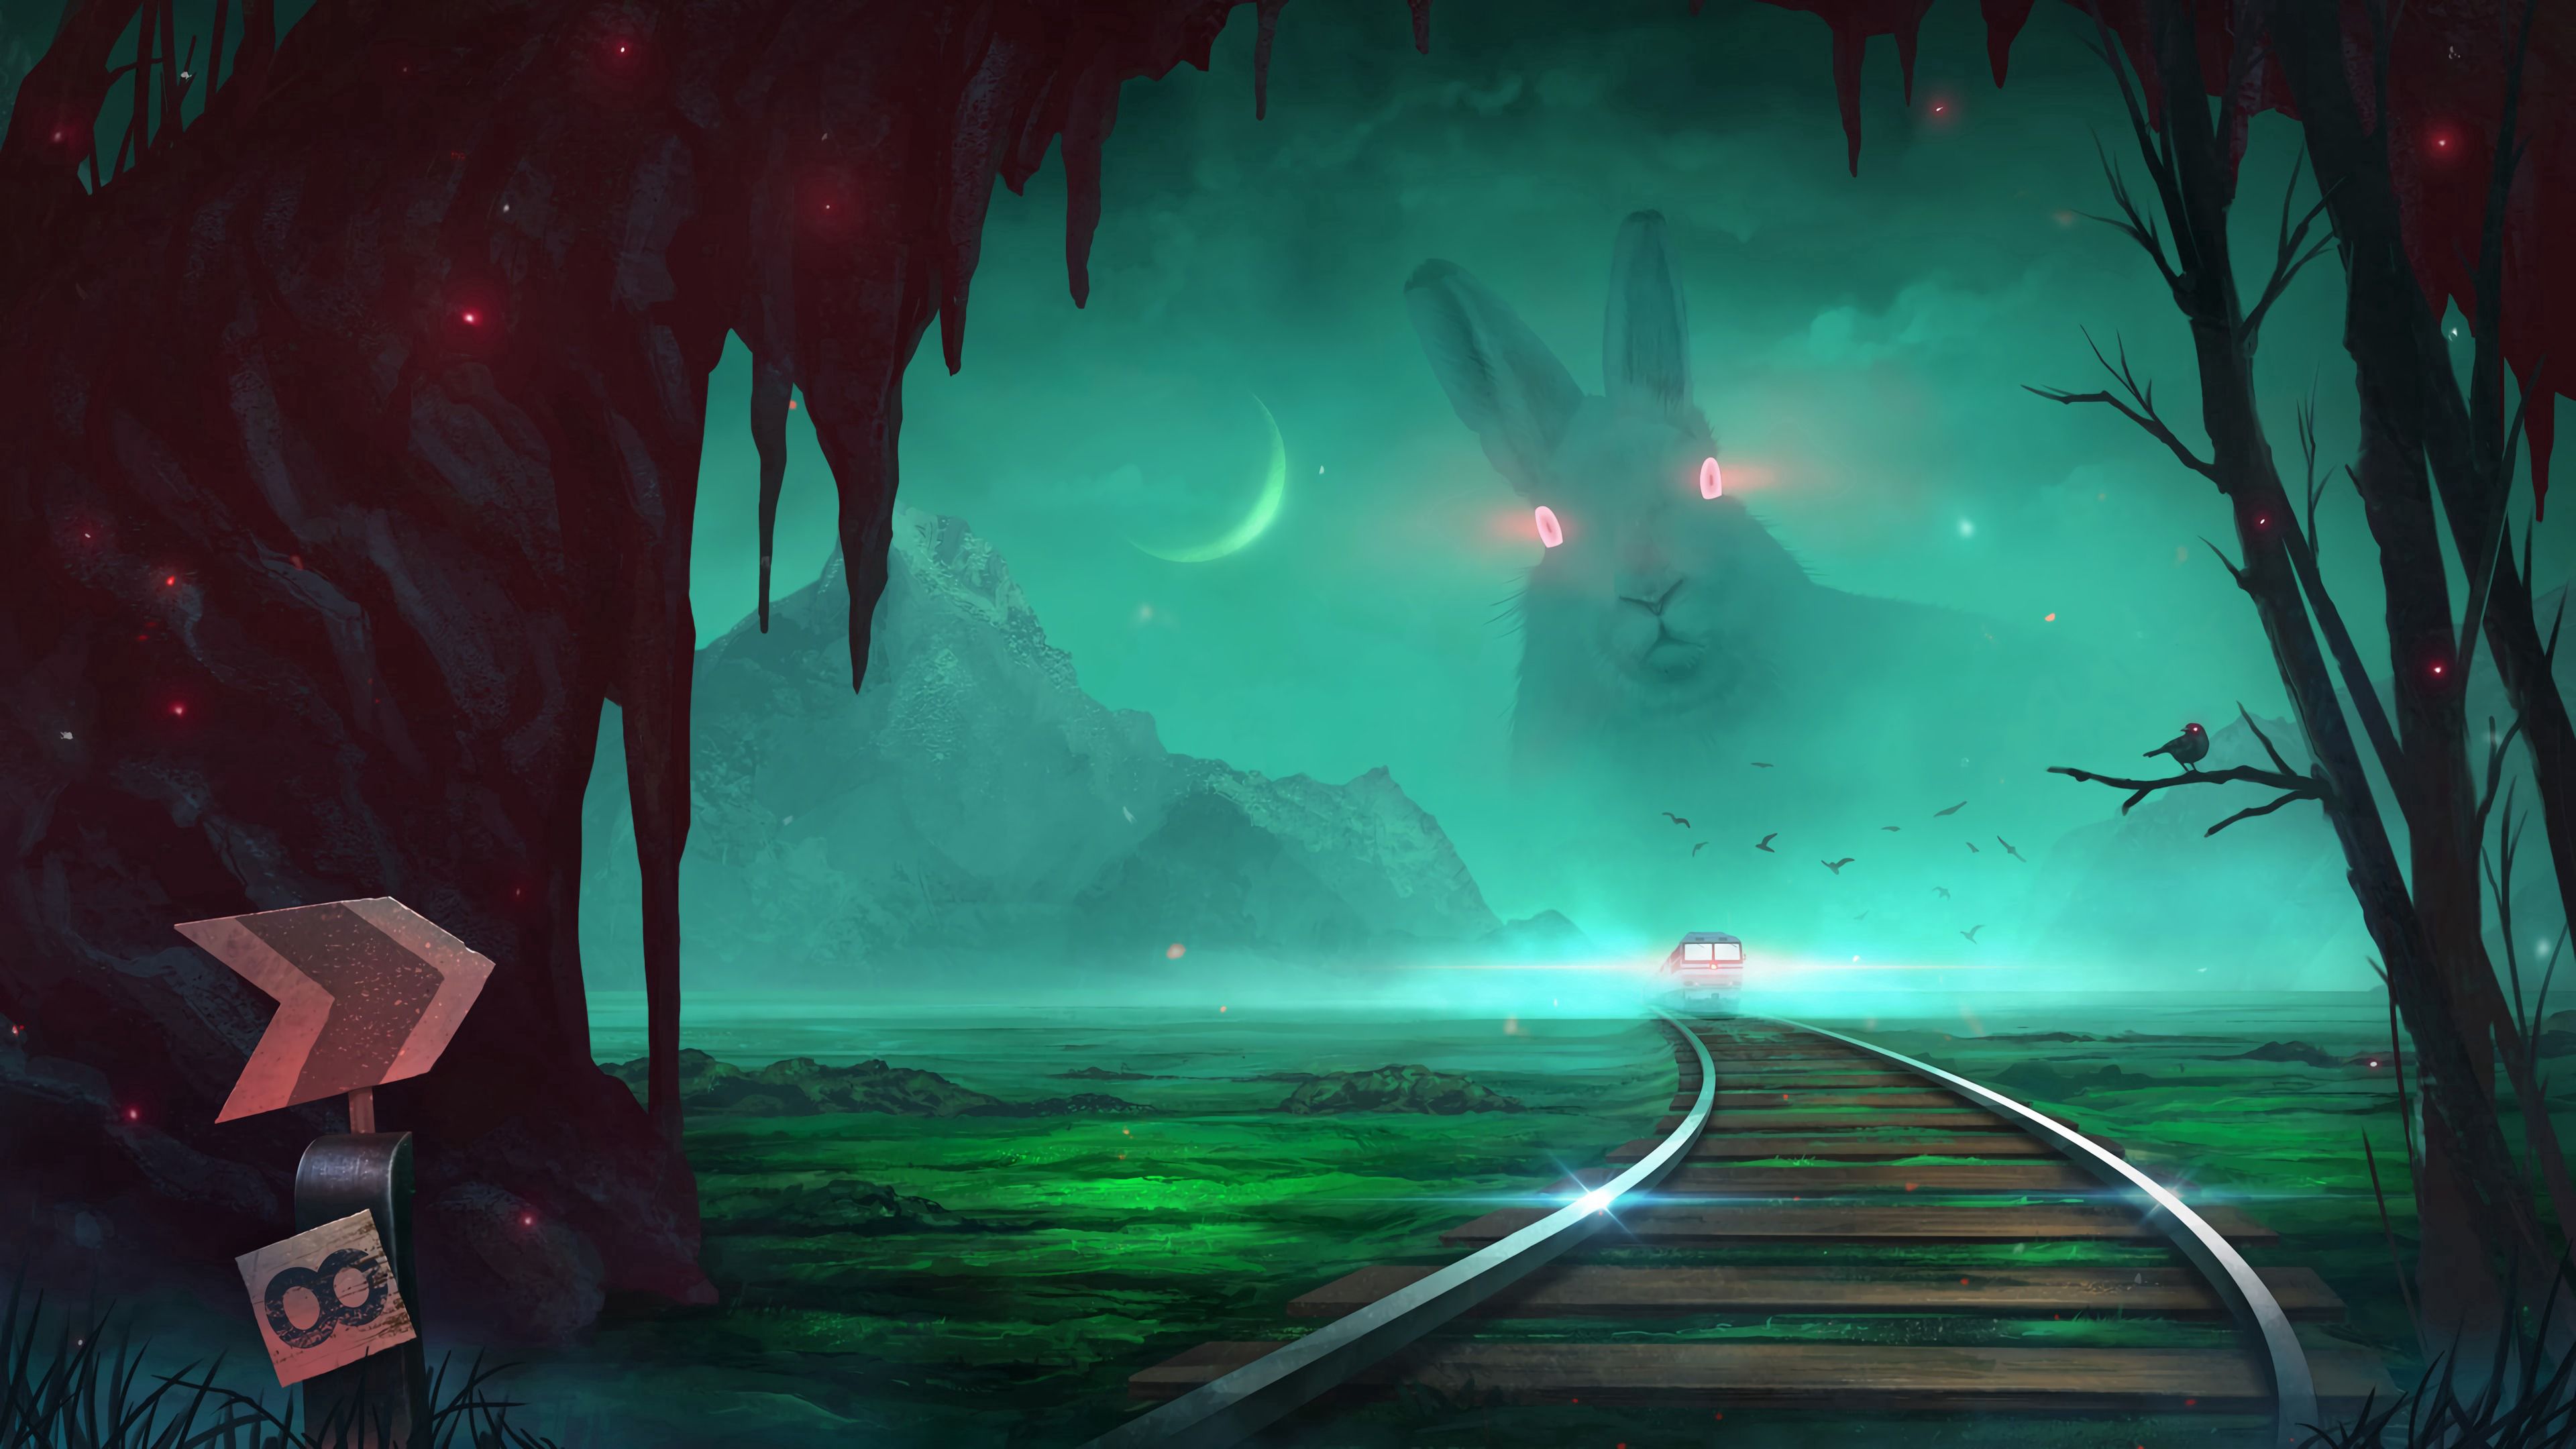 android rabbit, night, art, illusion, train